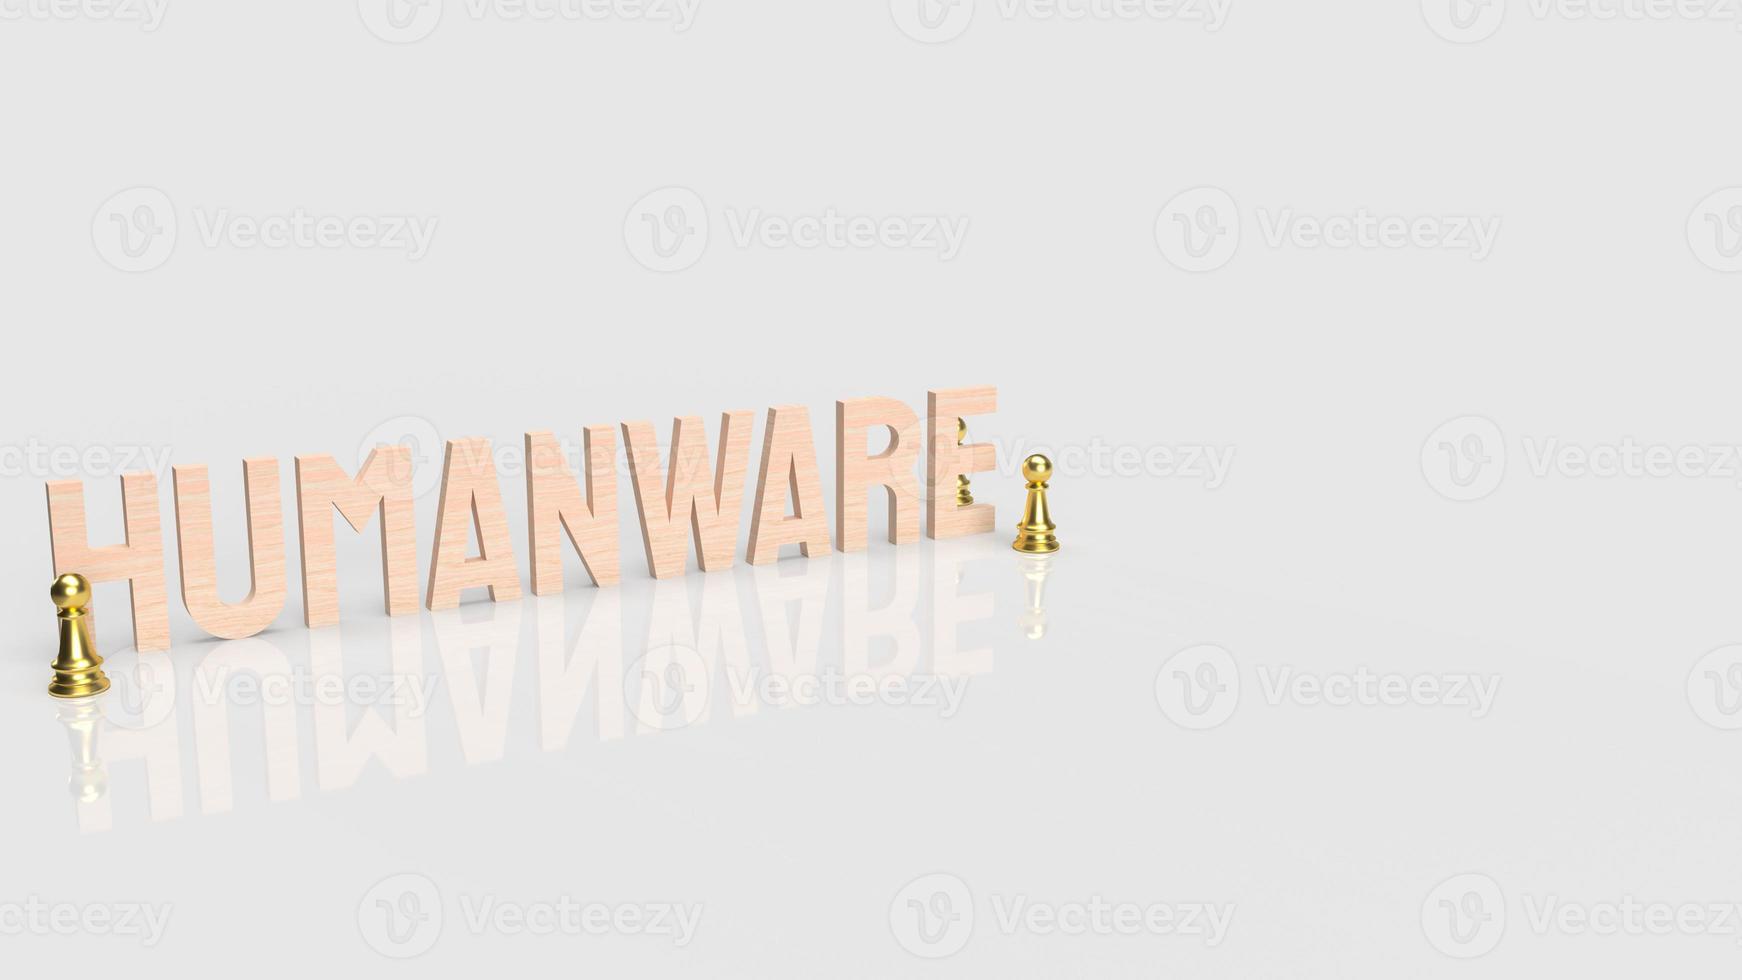 Das Humanware-Wort und der weiße Hintergrund des Goldschachs für das 3D-Rendering des Geschäfts- oder Technologiekonzepts foto